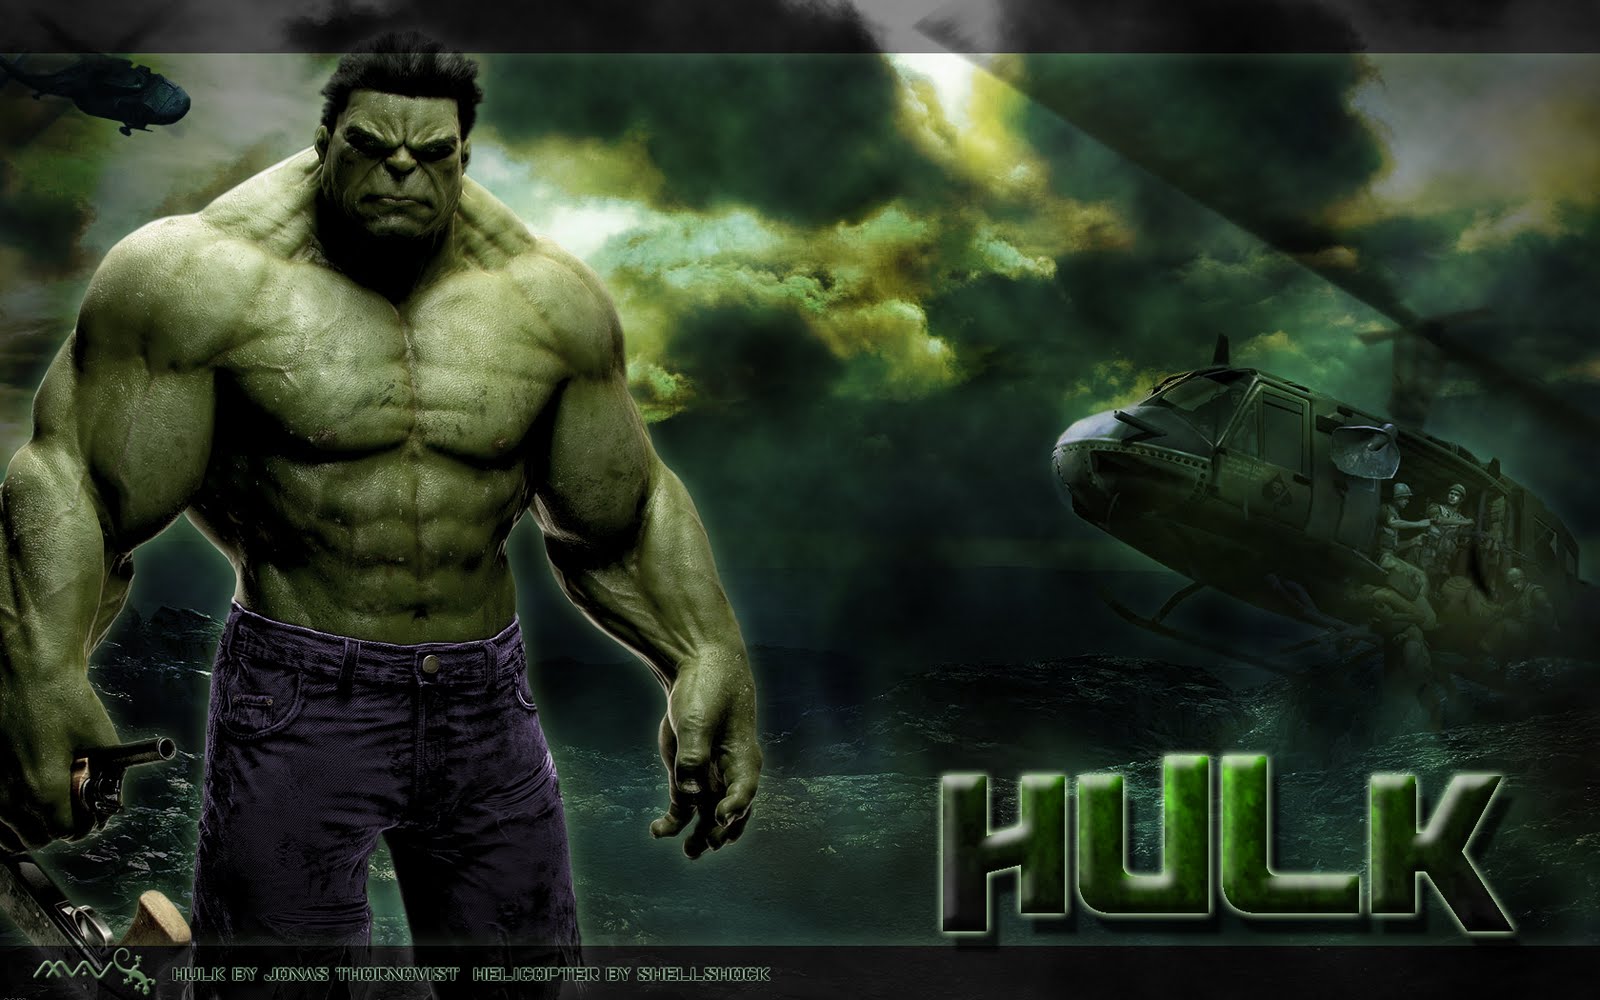 Hulk HD Wallpapers 1080p - WallpaperSafari